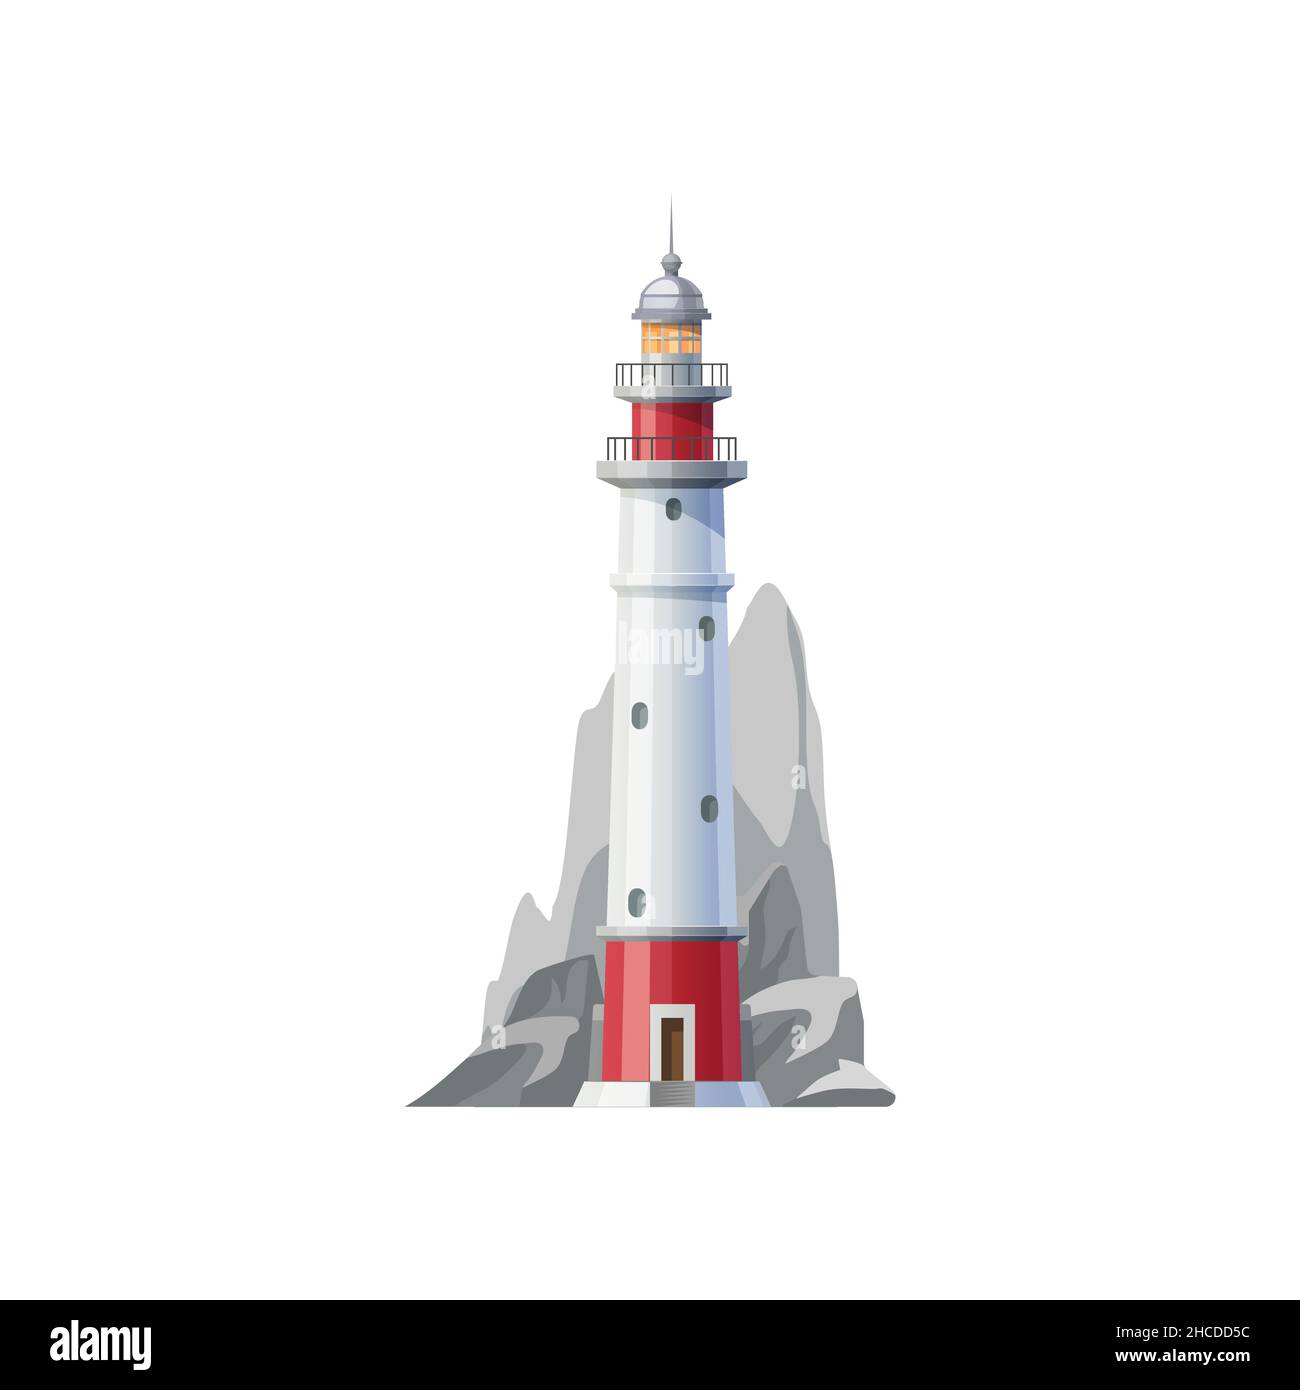 Faro de mar, faro de la costa o torre de baliza y faro, icono vectorial. Faro en roca del acantilado del océano para la navegación de los barcos y la navegación marítima segura Ilustración del Vector